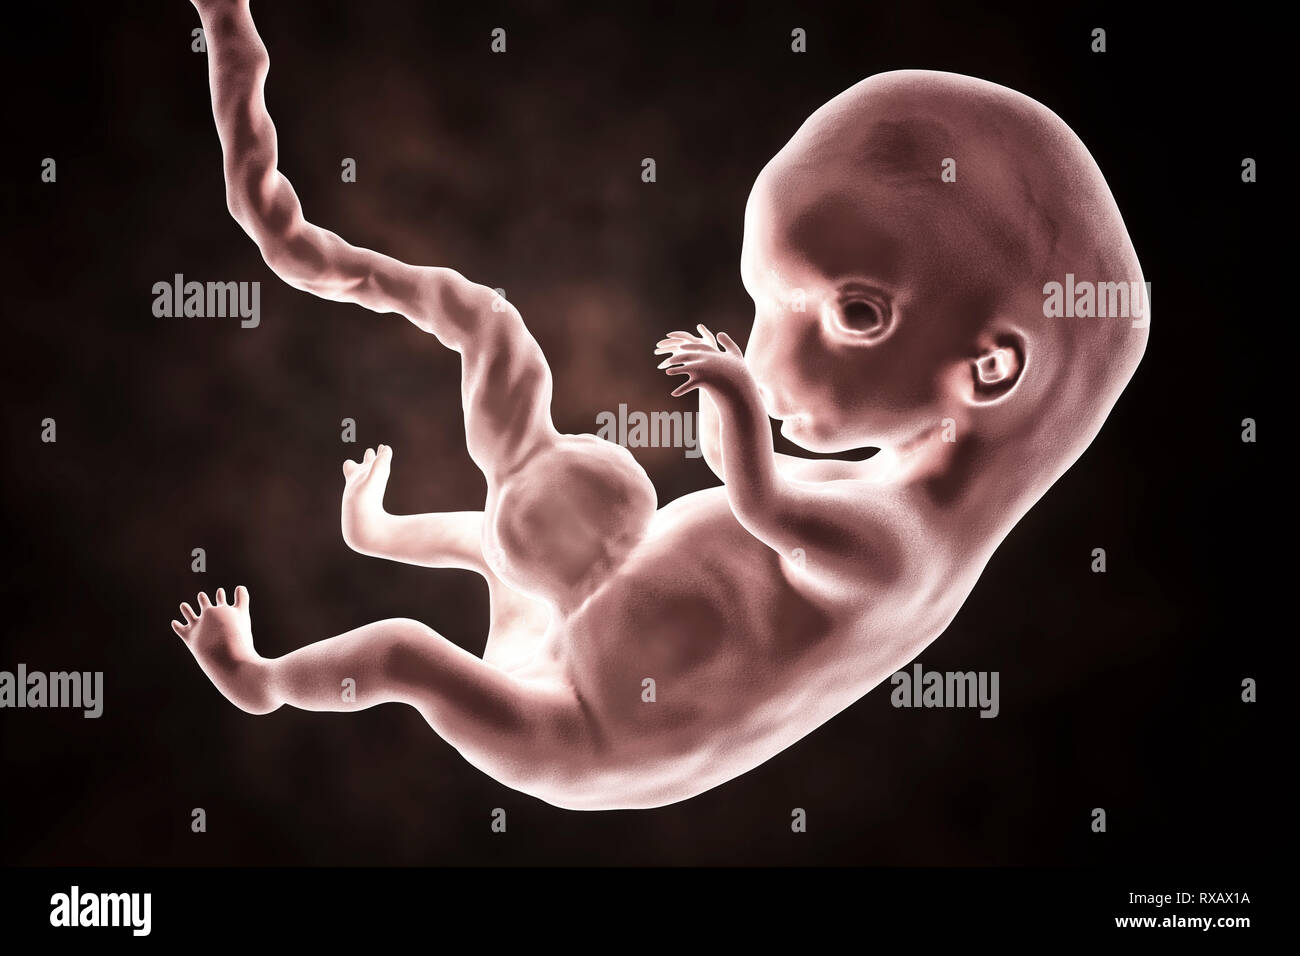 Les droits de l'embryon, 8 semaines, illustration Banque D'Images